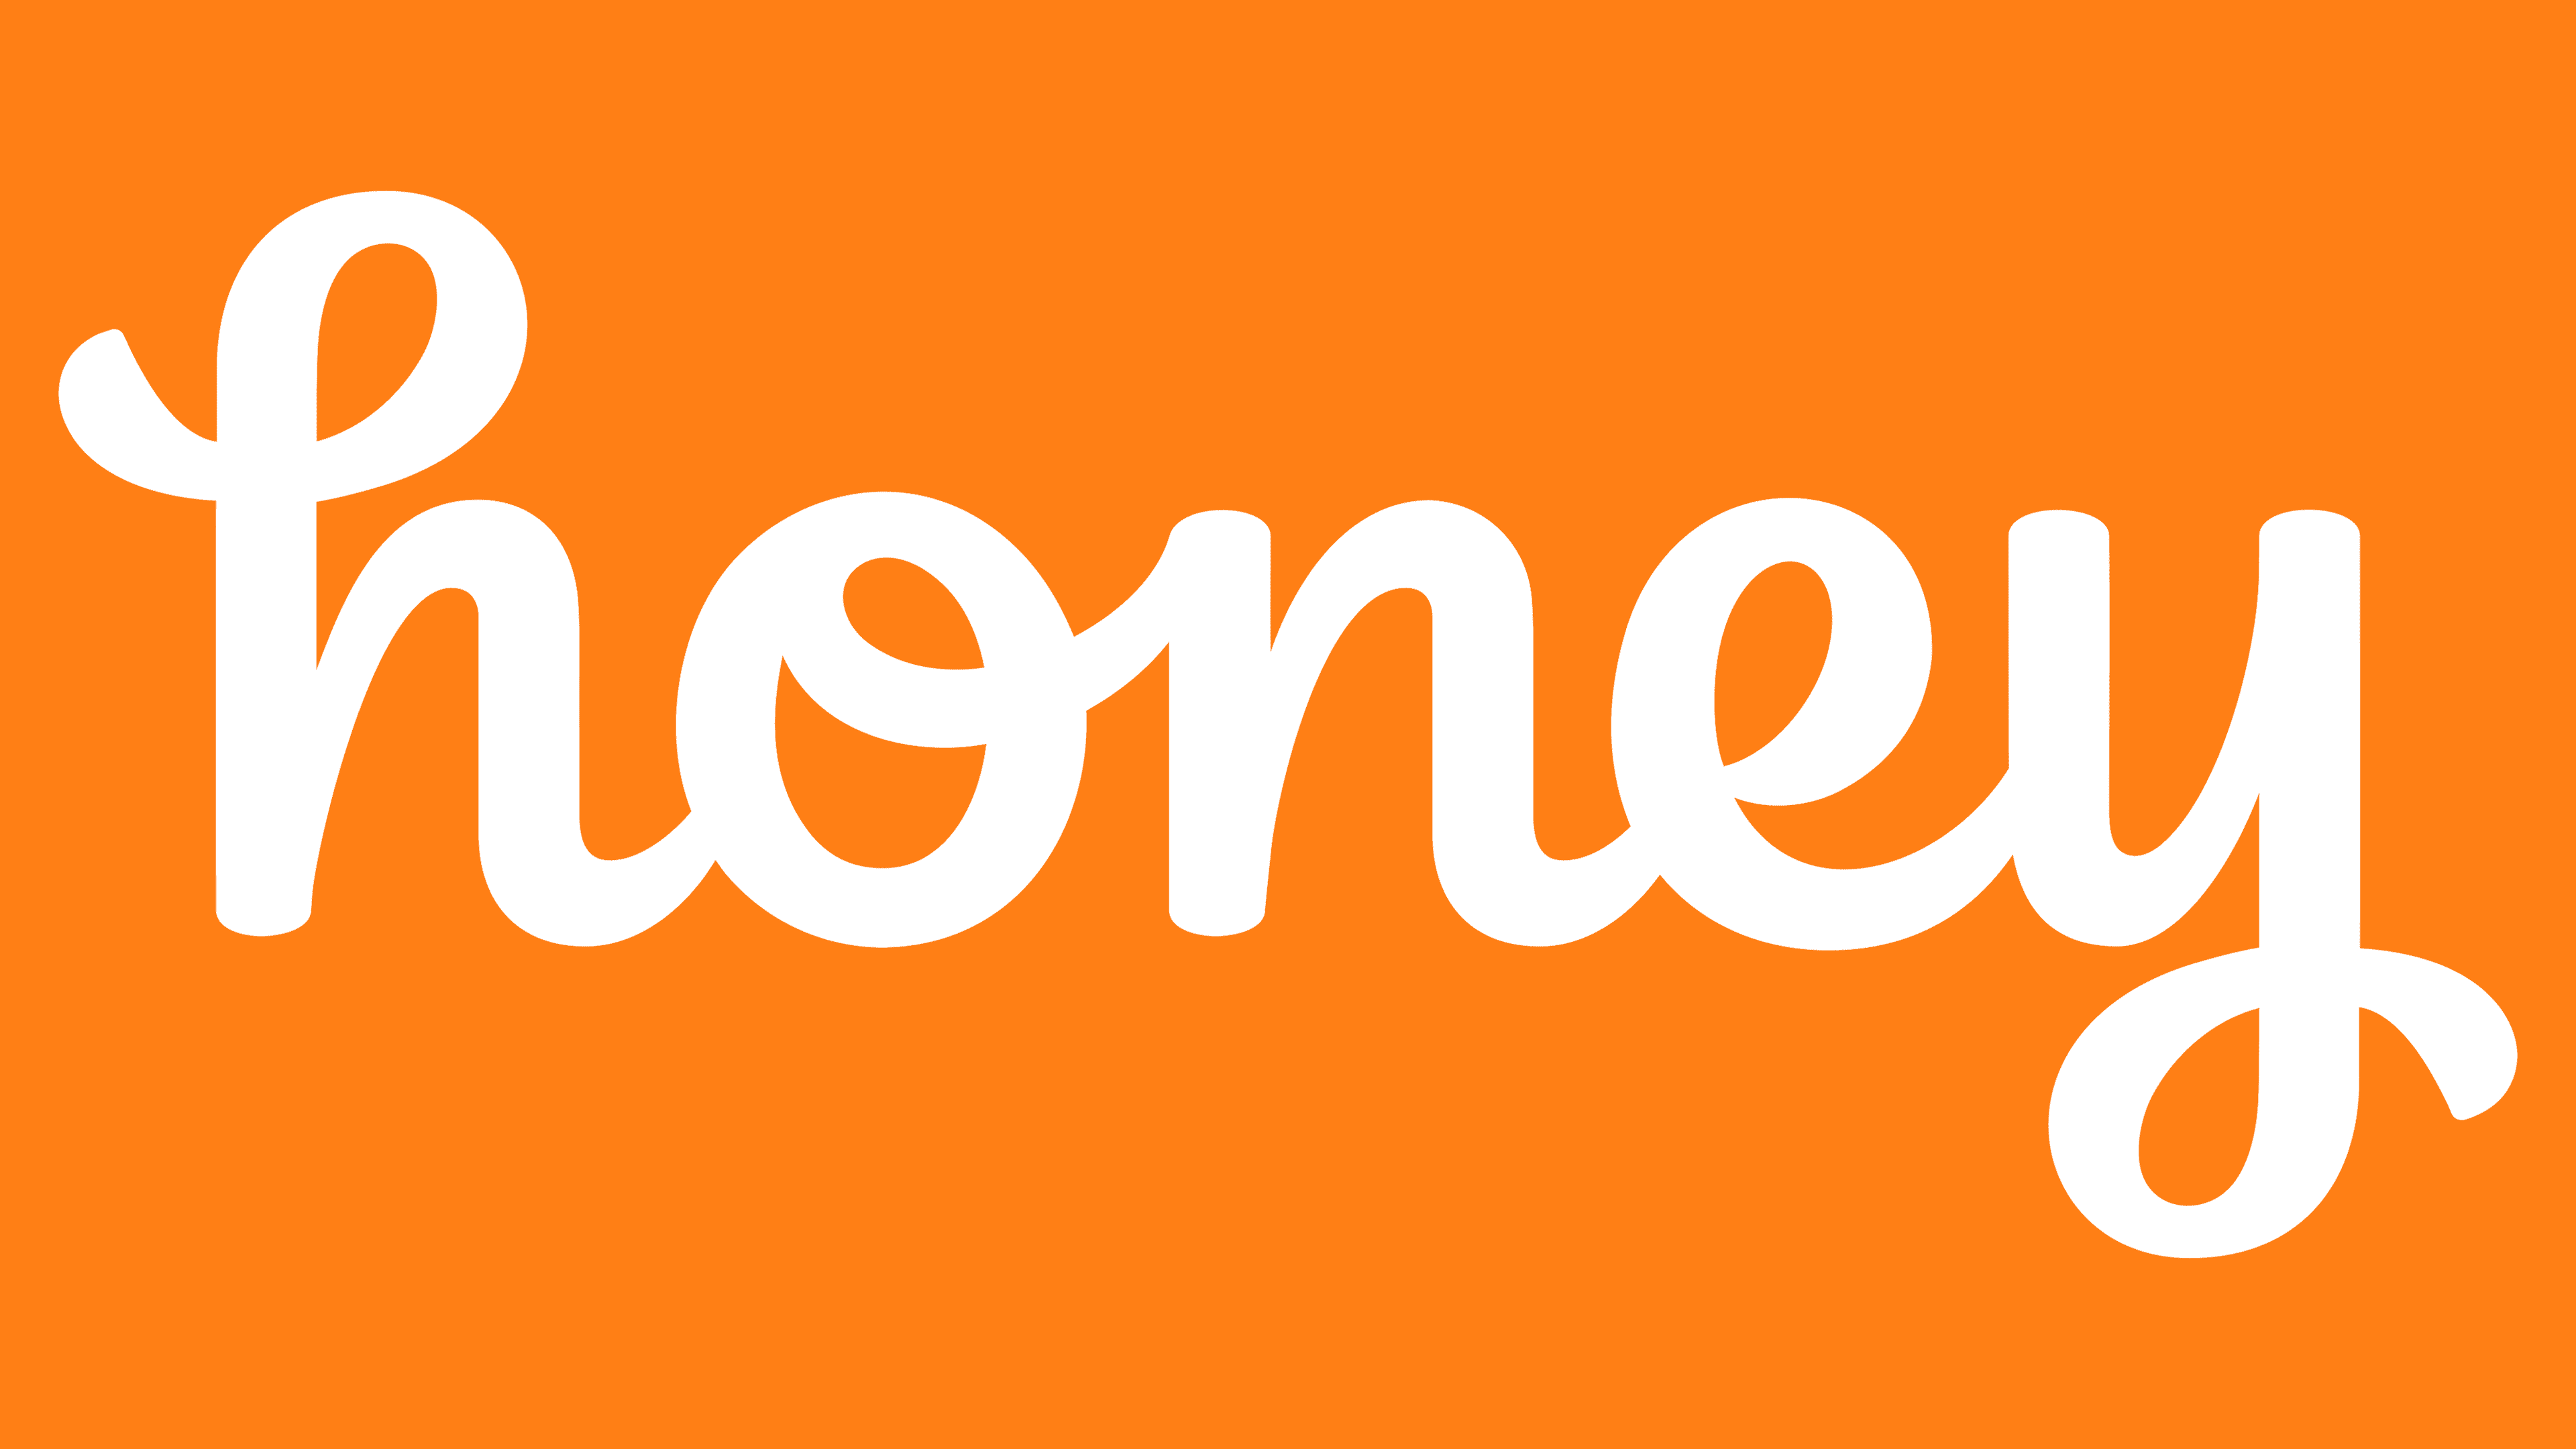 joinhoney.com